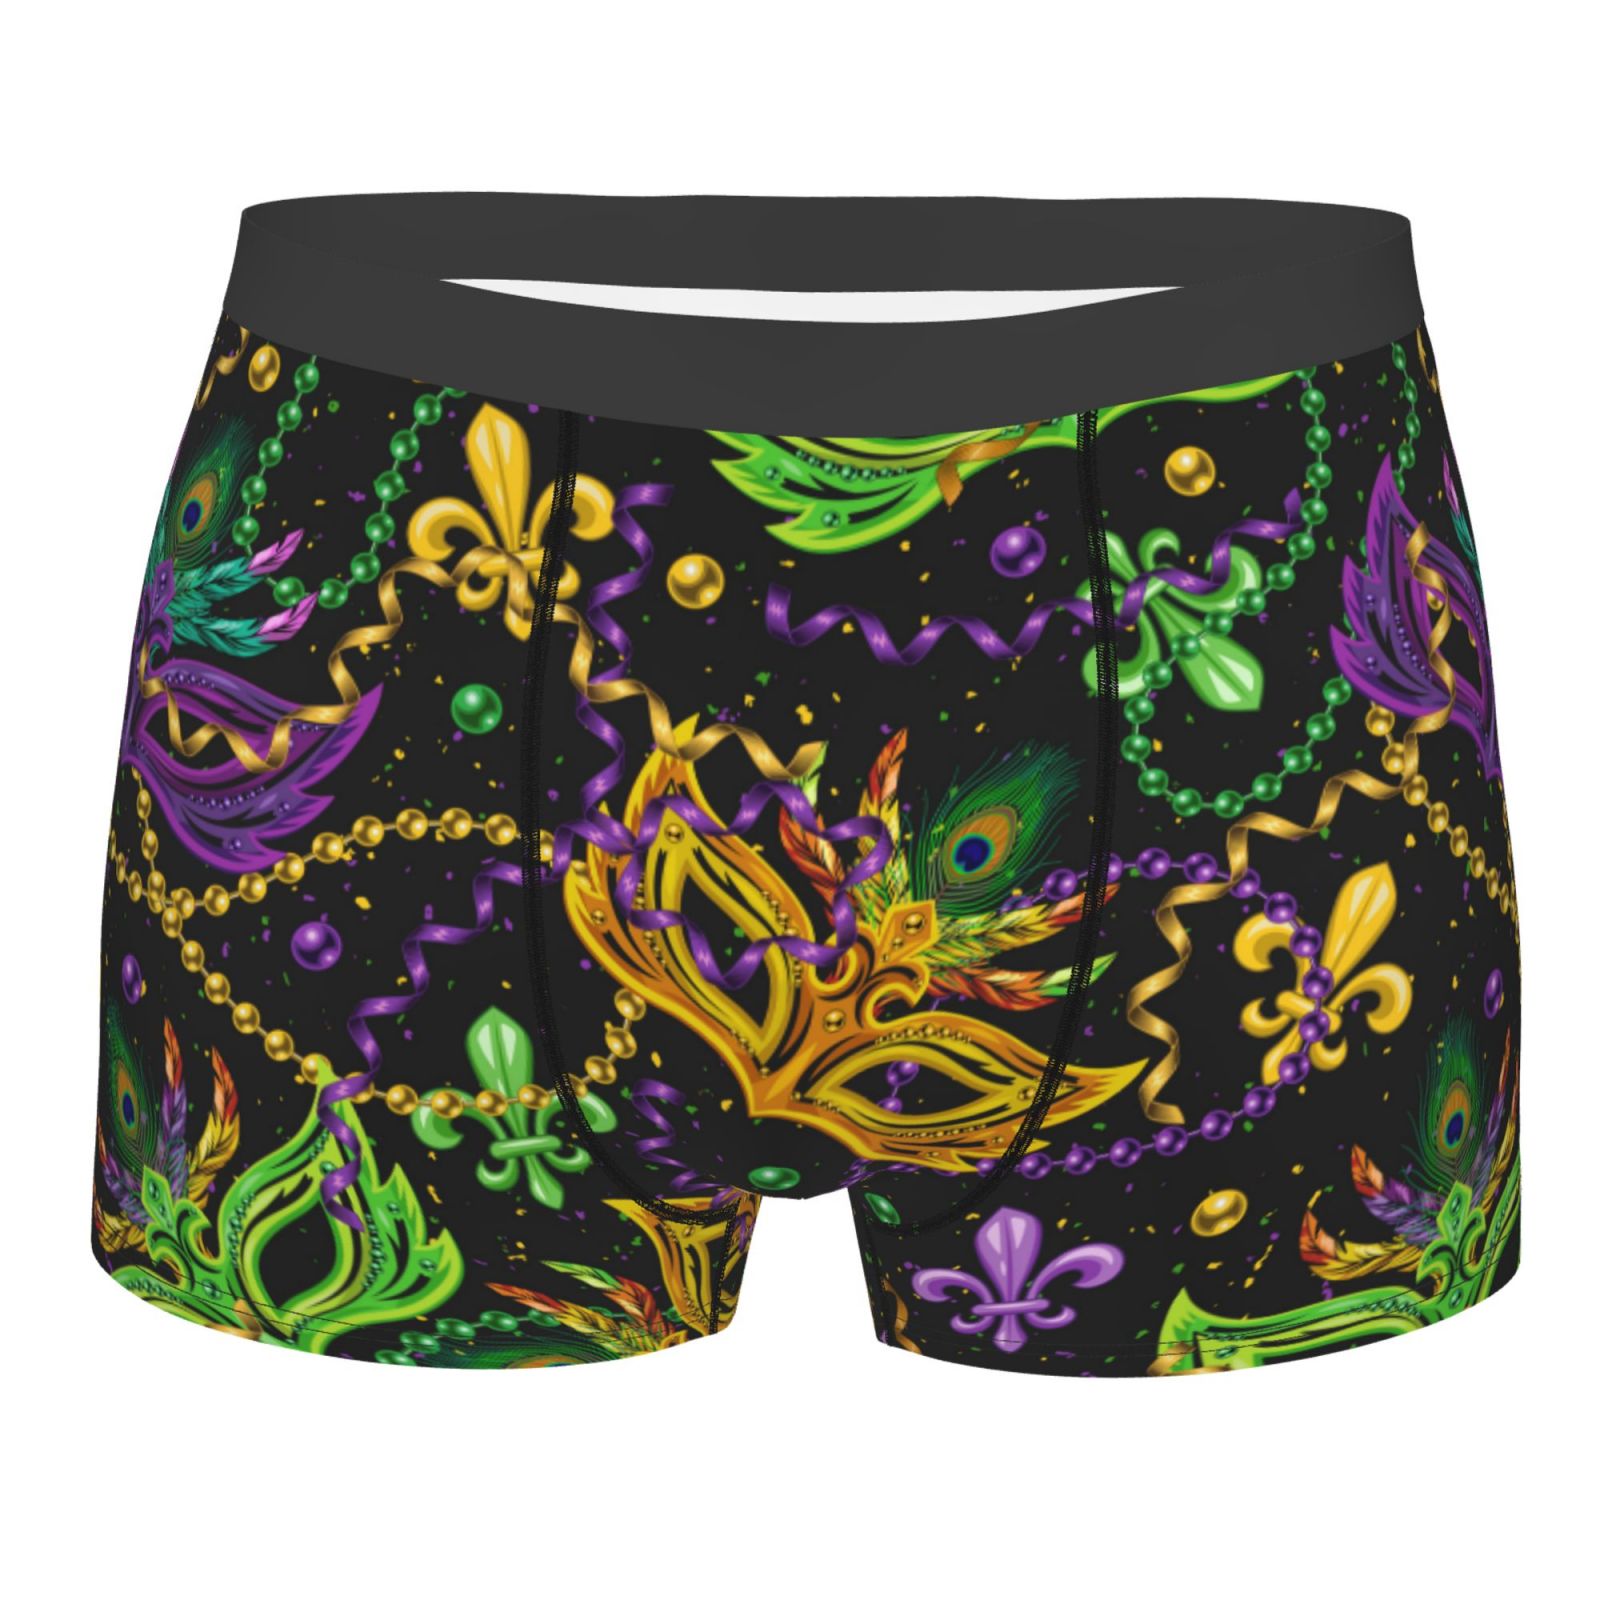 Daiia Mardi Gras Surface Men's Underwear Boxer Briefs, Cotton Stretch ...